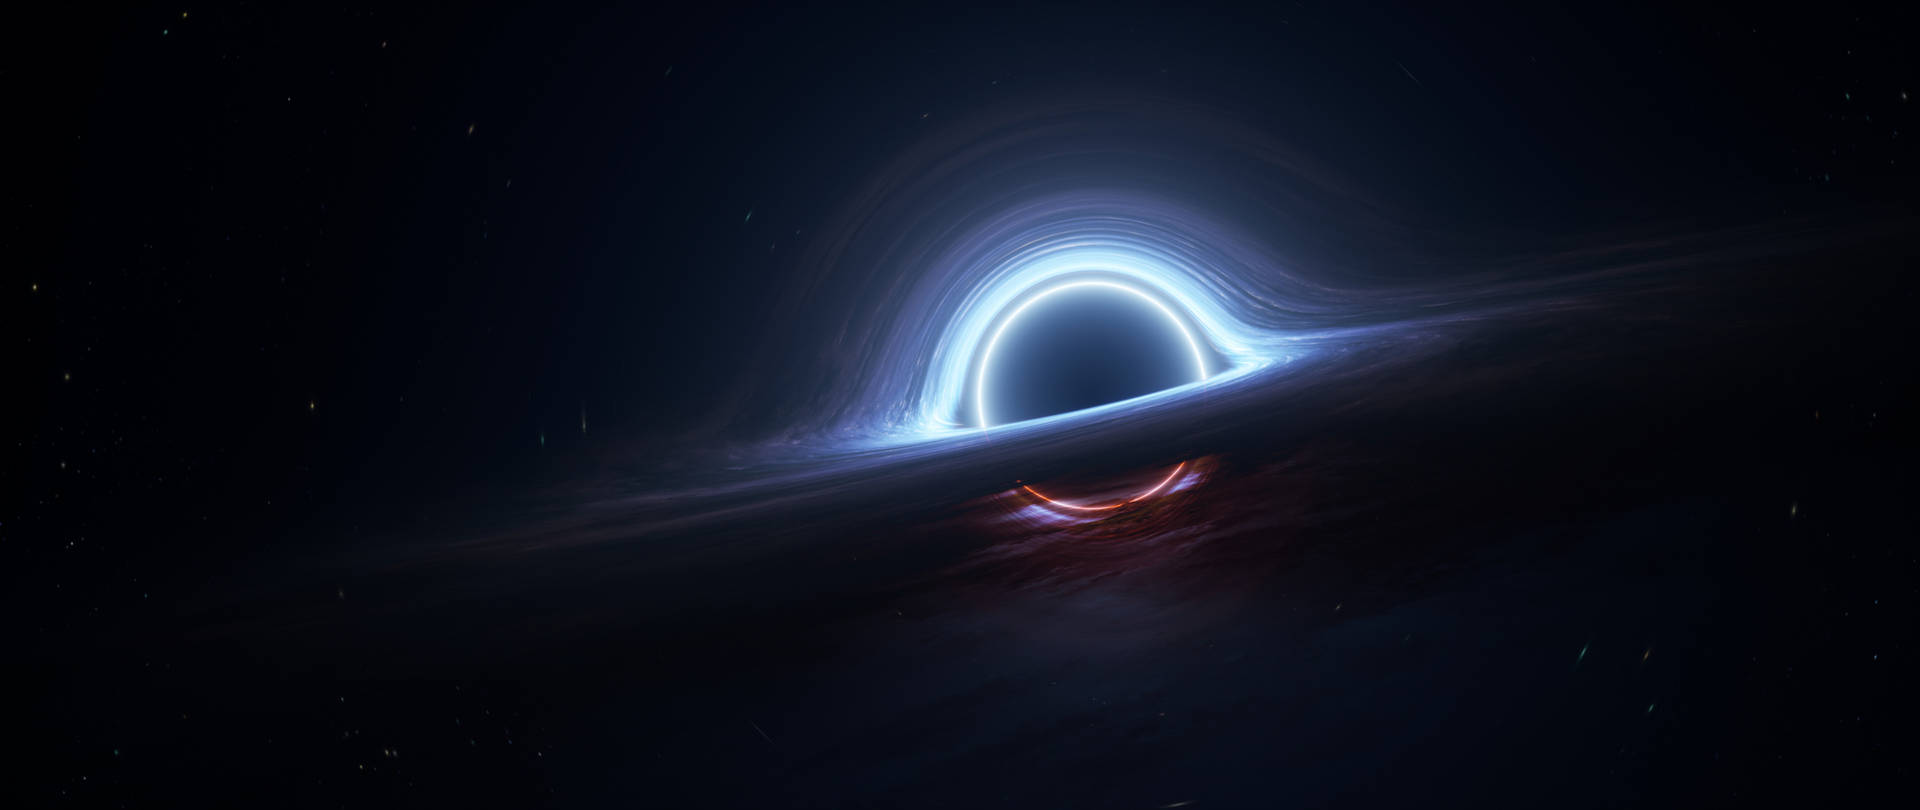 Hãy thử sức với hình nền hố đen siêu đẹp, sắc màu điện ảnh và đường nét cực kỳ sắc sảo. Hãy đắm mình vào những vòng quay, phân quyền của không gian và trở thành một nhà khoa học hiểu biết về vũ trụ.